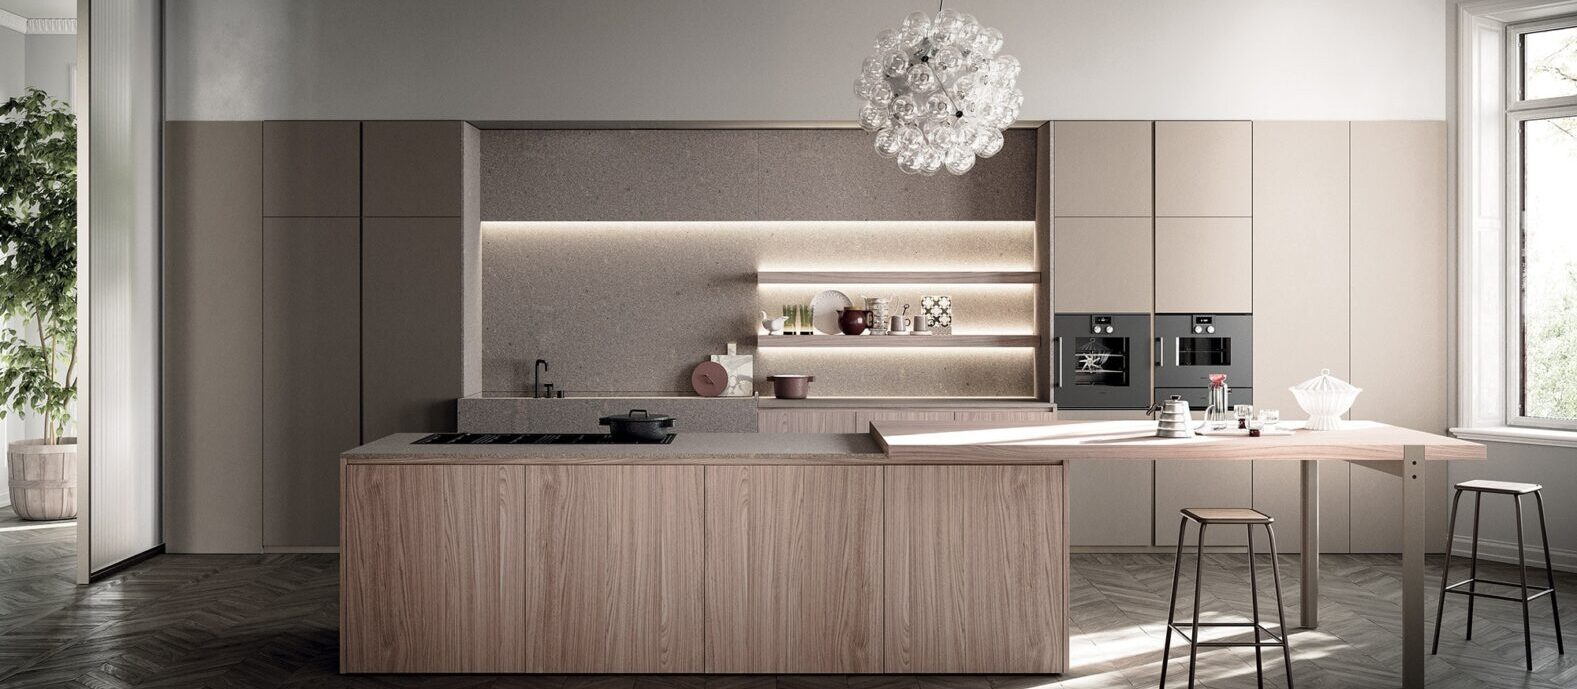 concept g7 kitchen design